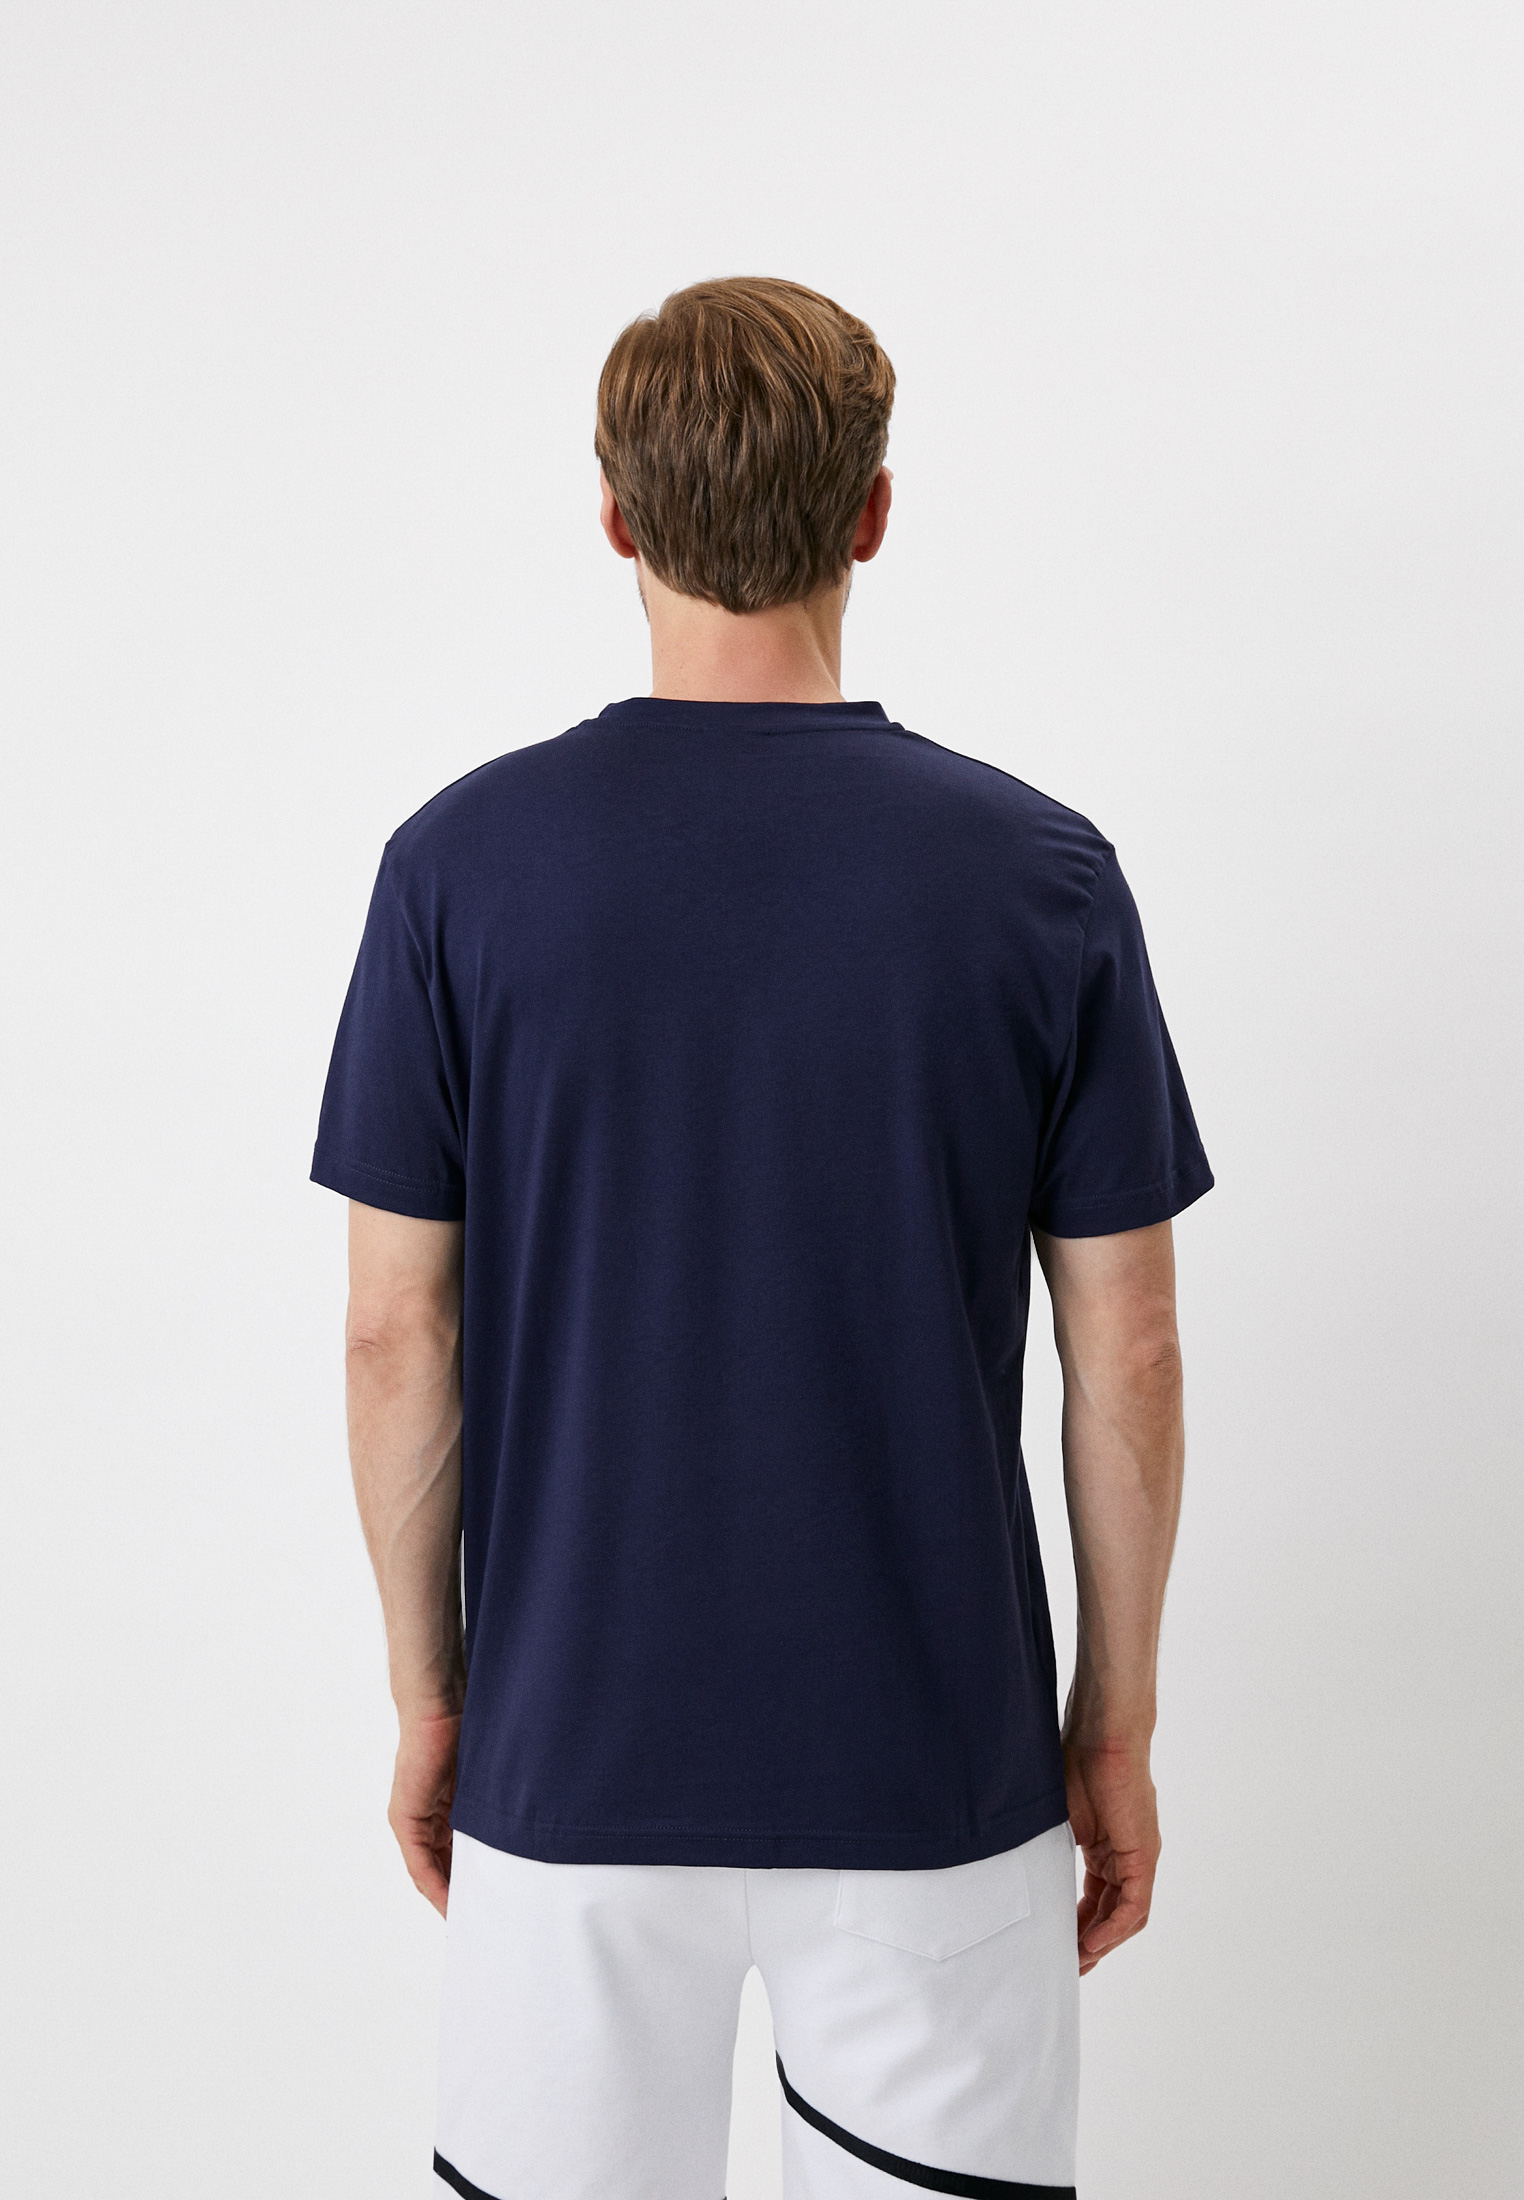 Мужская футболка Baldinini (Балдинини) M500: изображение 3